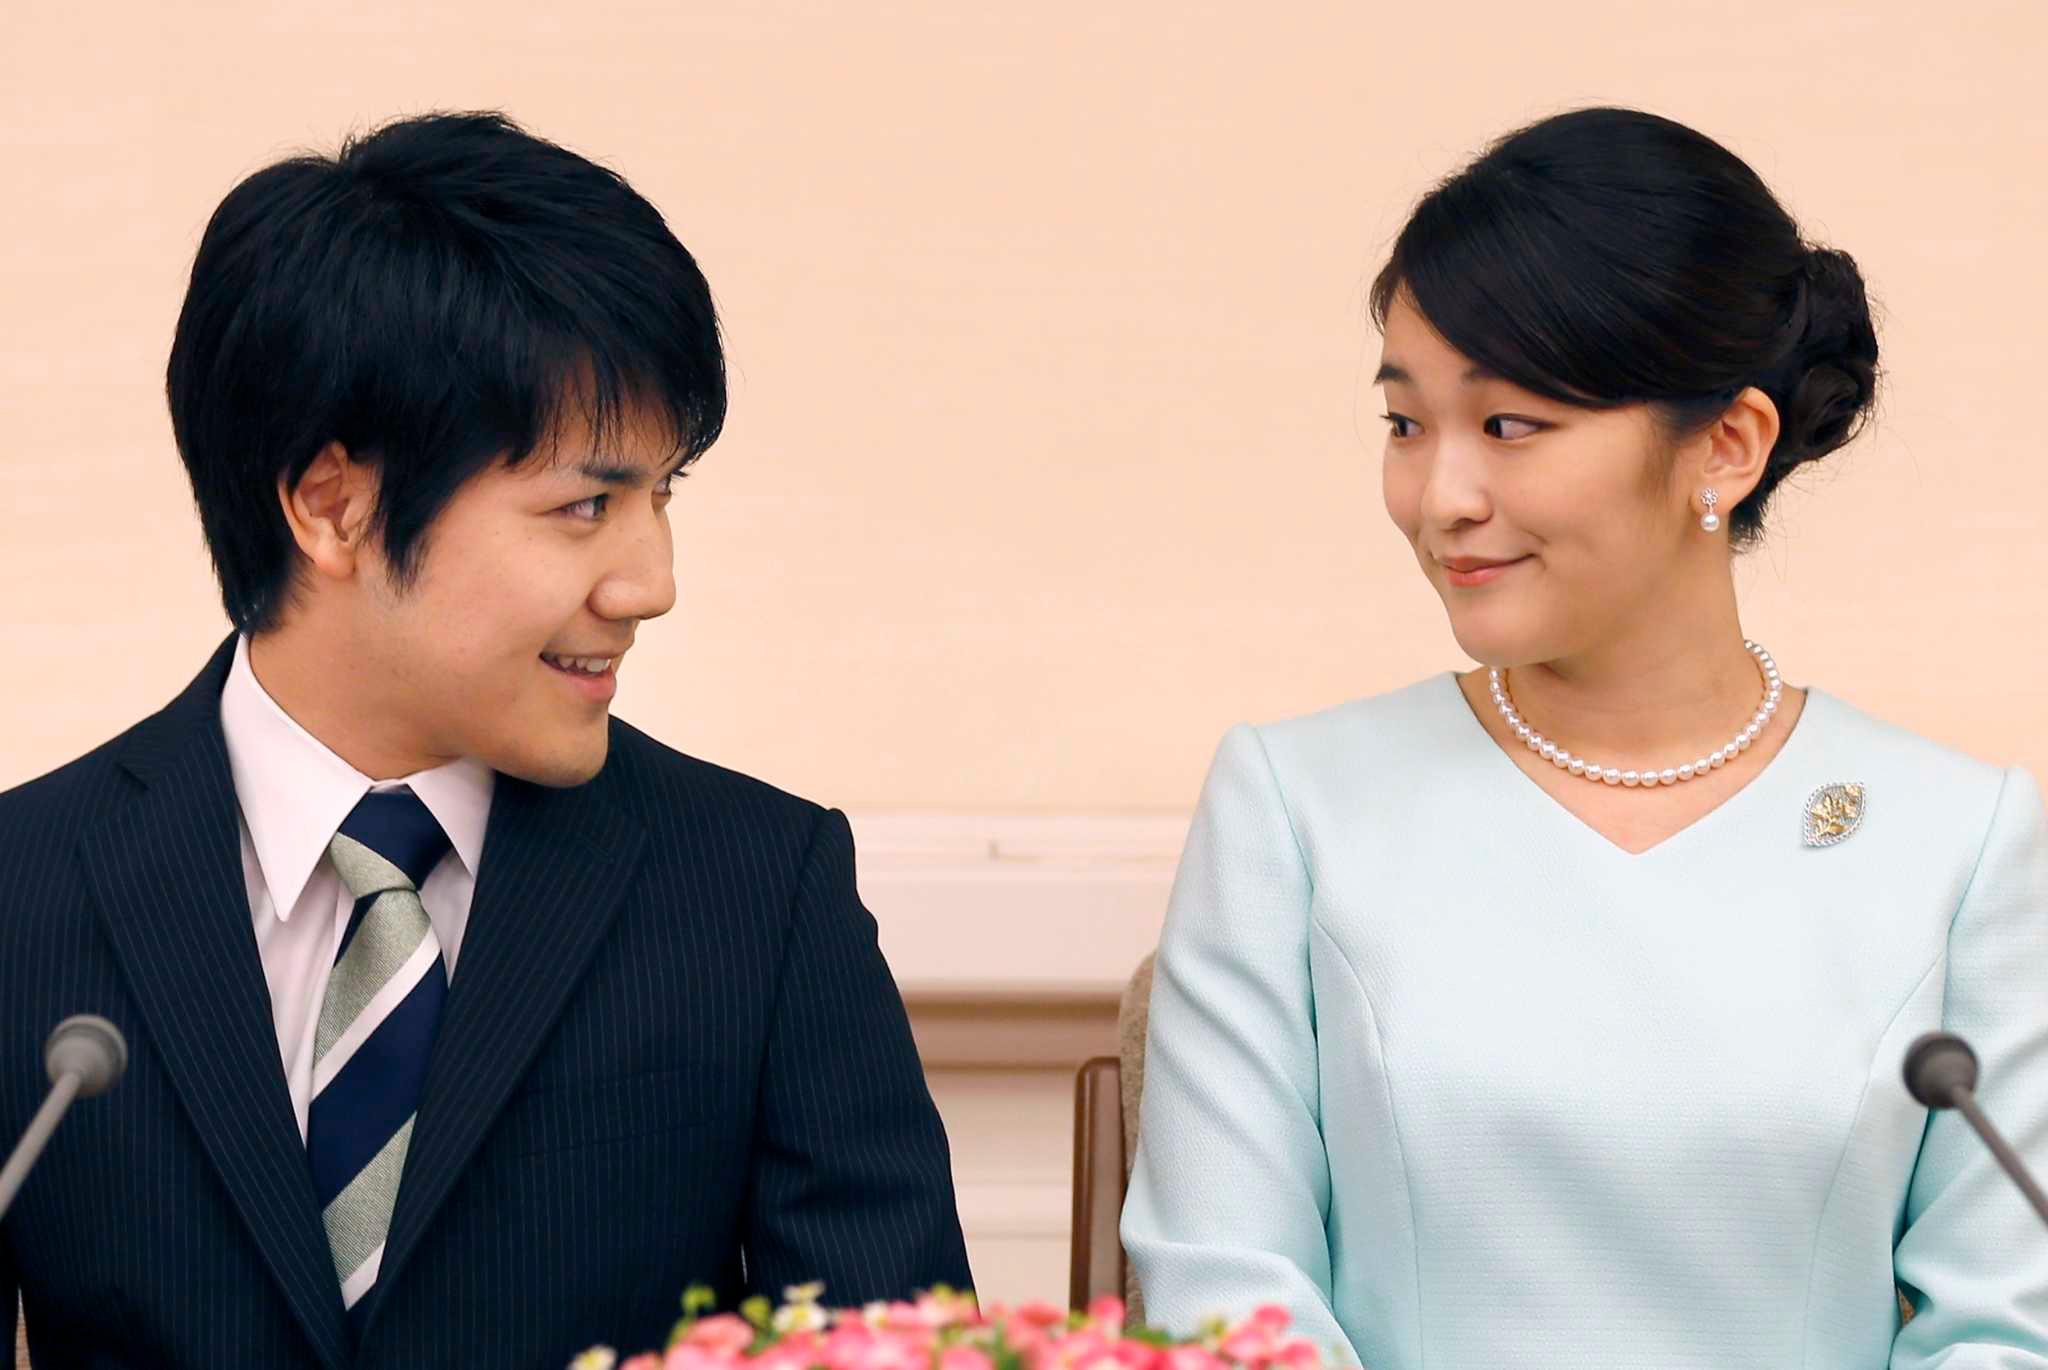 Abdikacija cara Akihita poremetila planove: Vjenčanje princeze Mako odgođeno za 2020. godinu